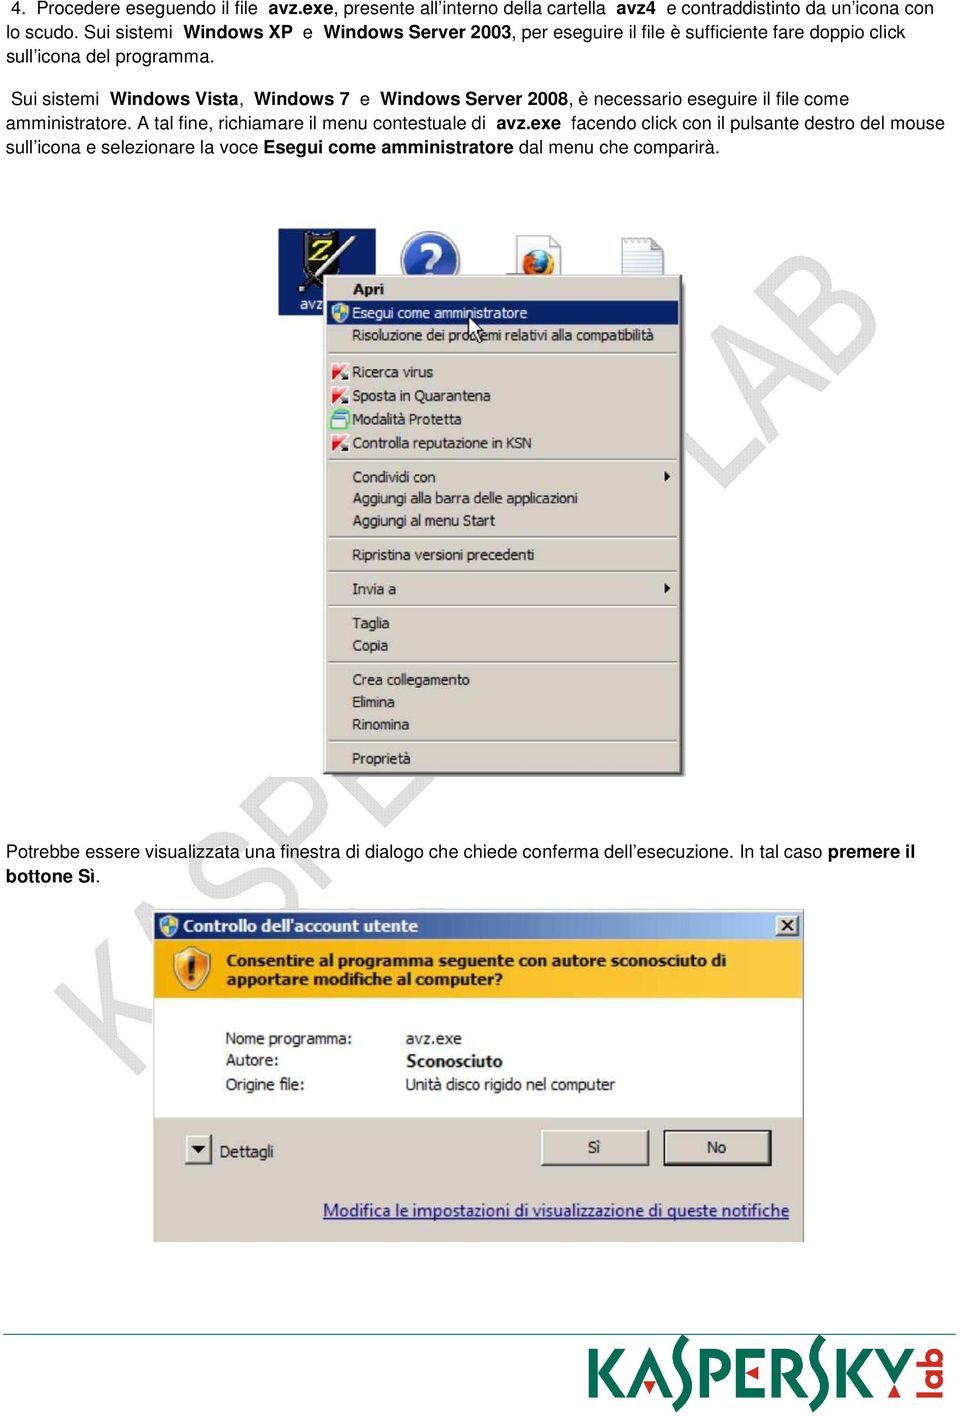 Sui sistemi Windows Vista, Windows 7 e Windows Server 2008, è necessario eseguire il file come amministratore. A tal fine, richiamare il menu contestuale di avz.